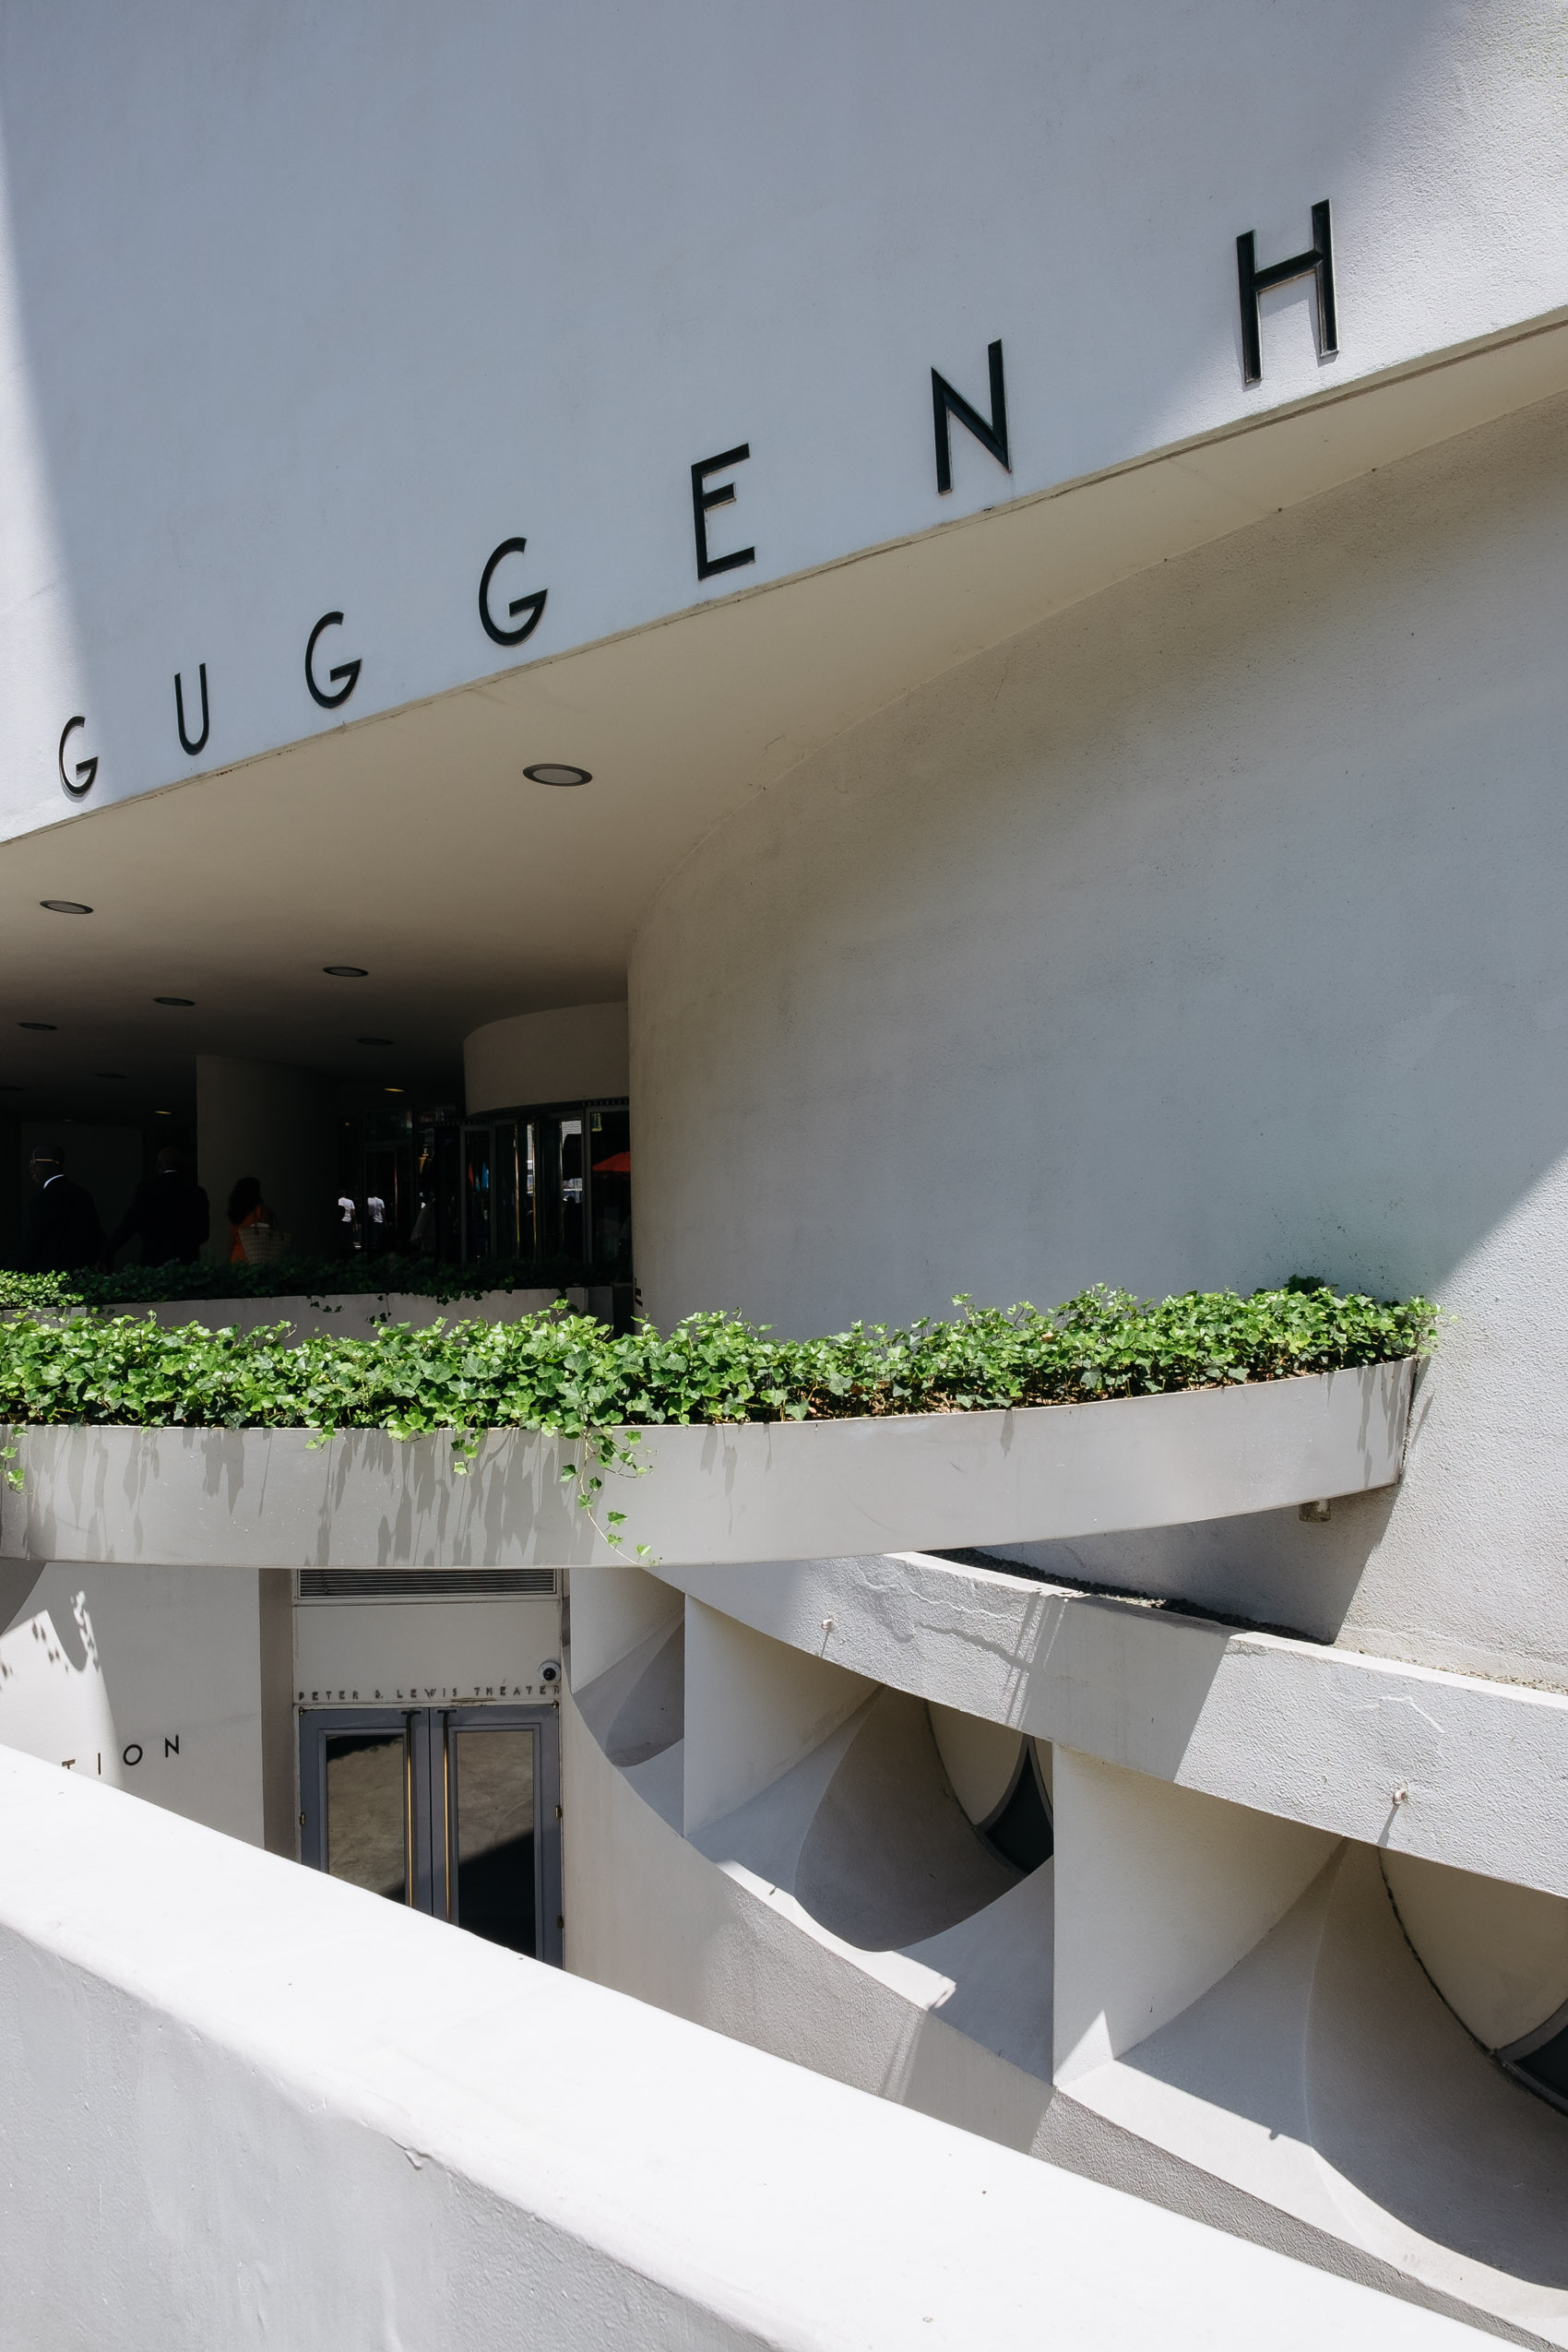 The New York Guggenheim Museum exterior façade